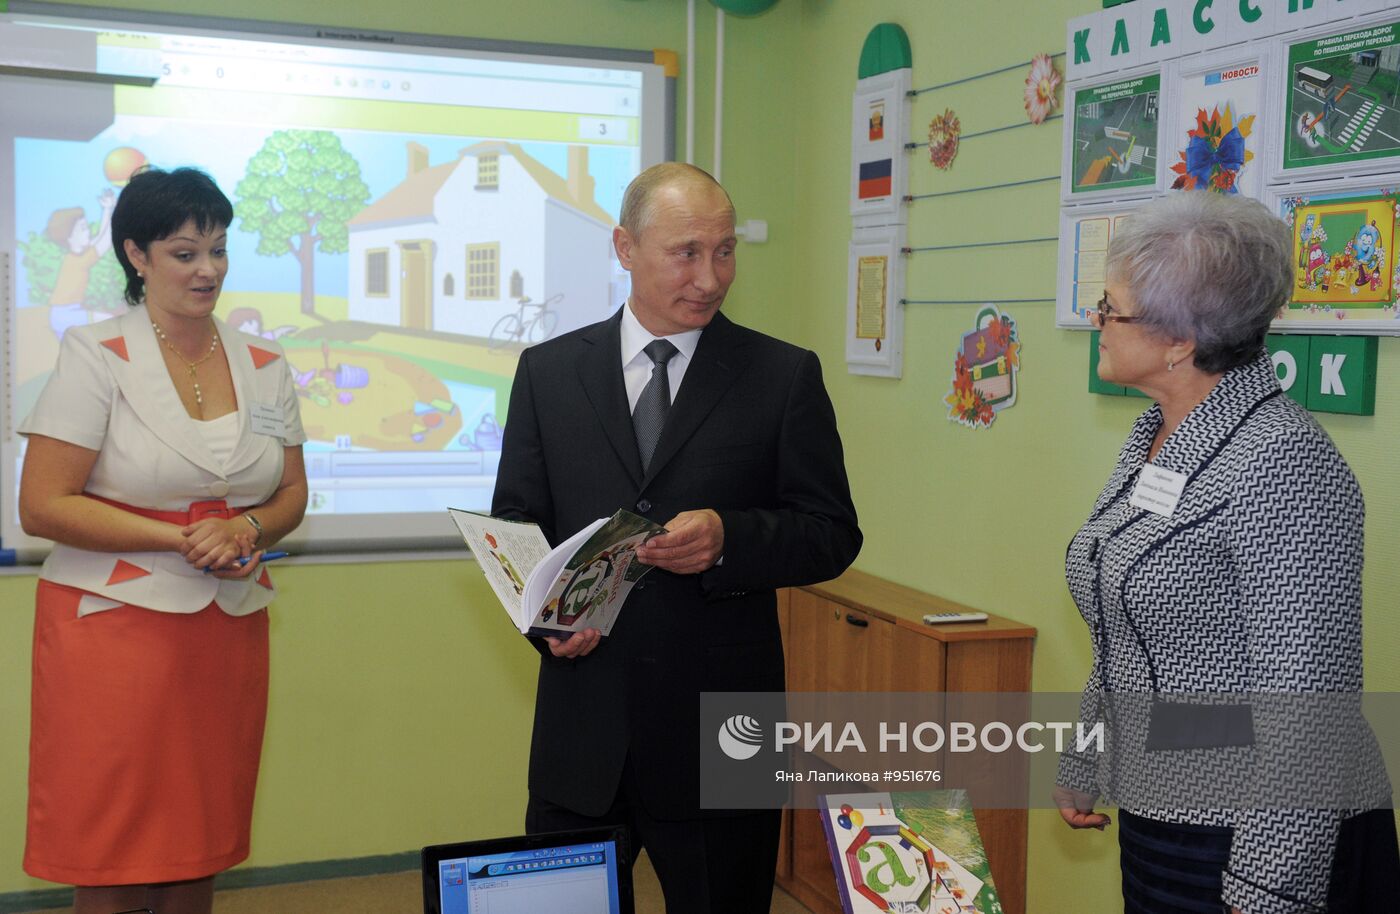 В.Путин посетил одну из школ в Подольске